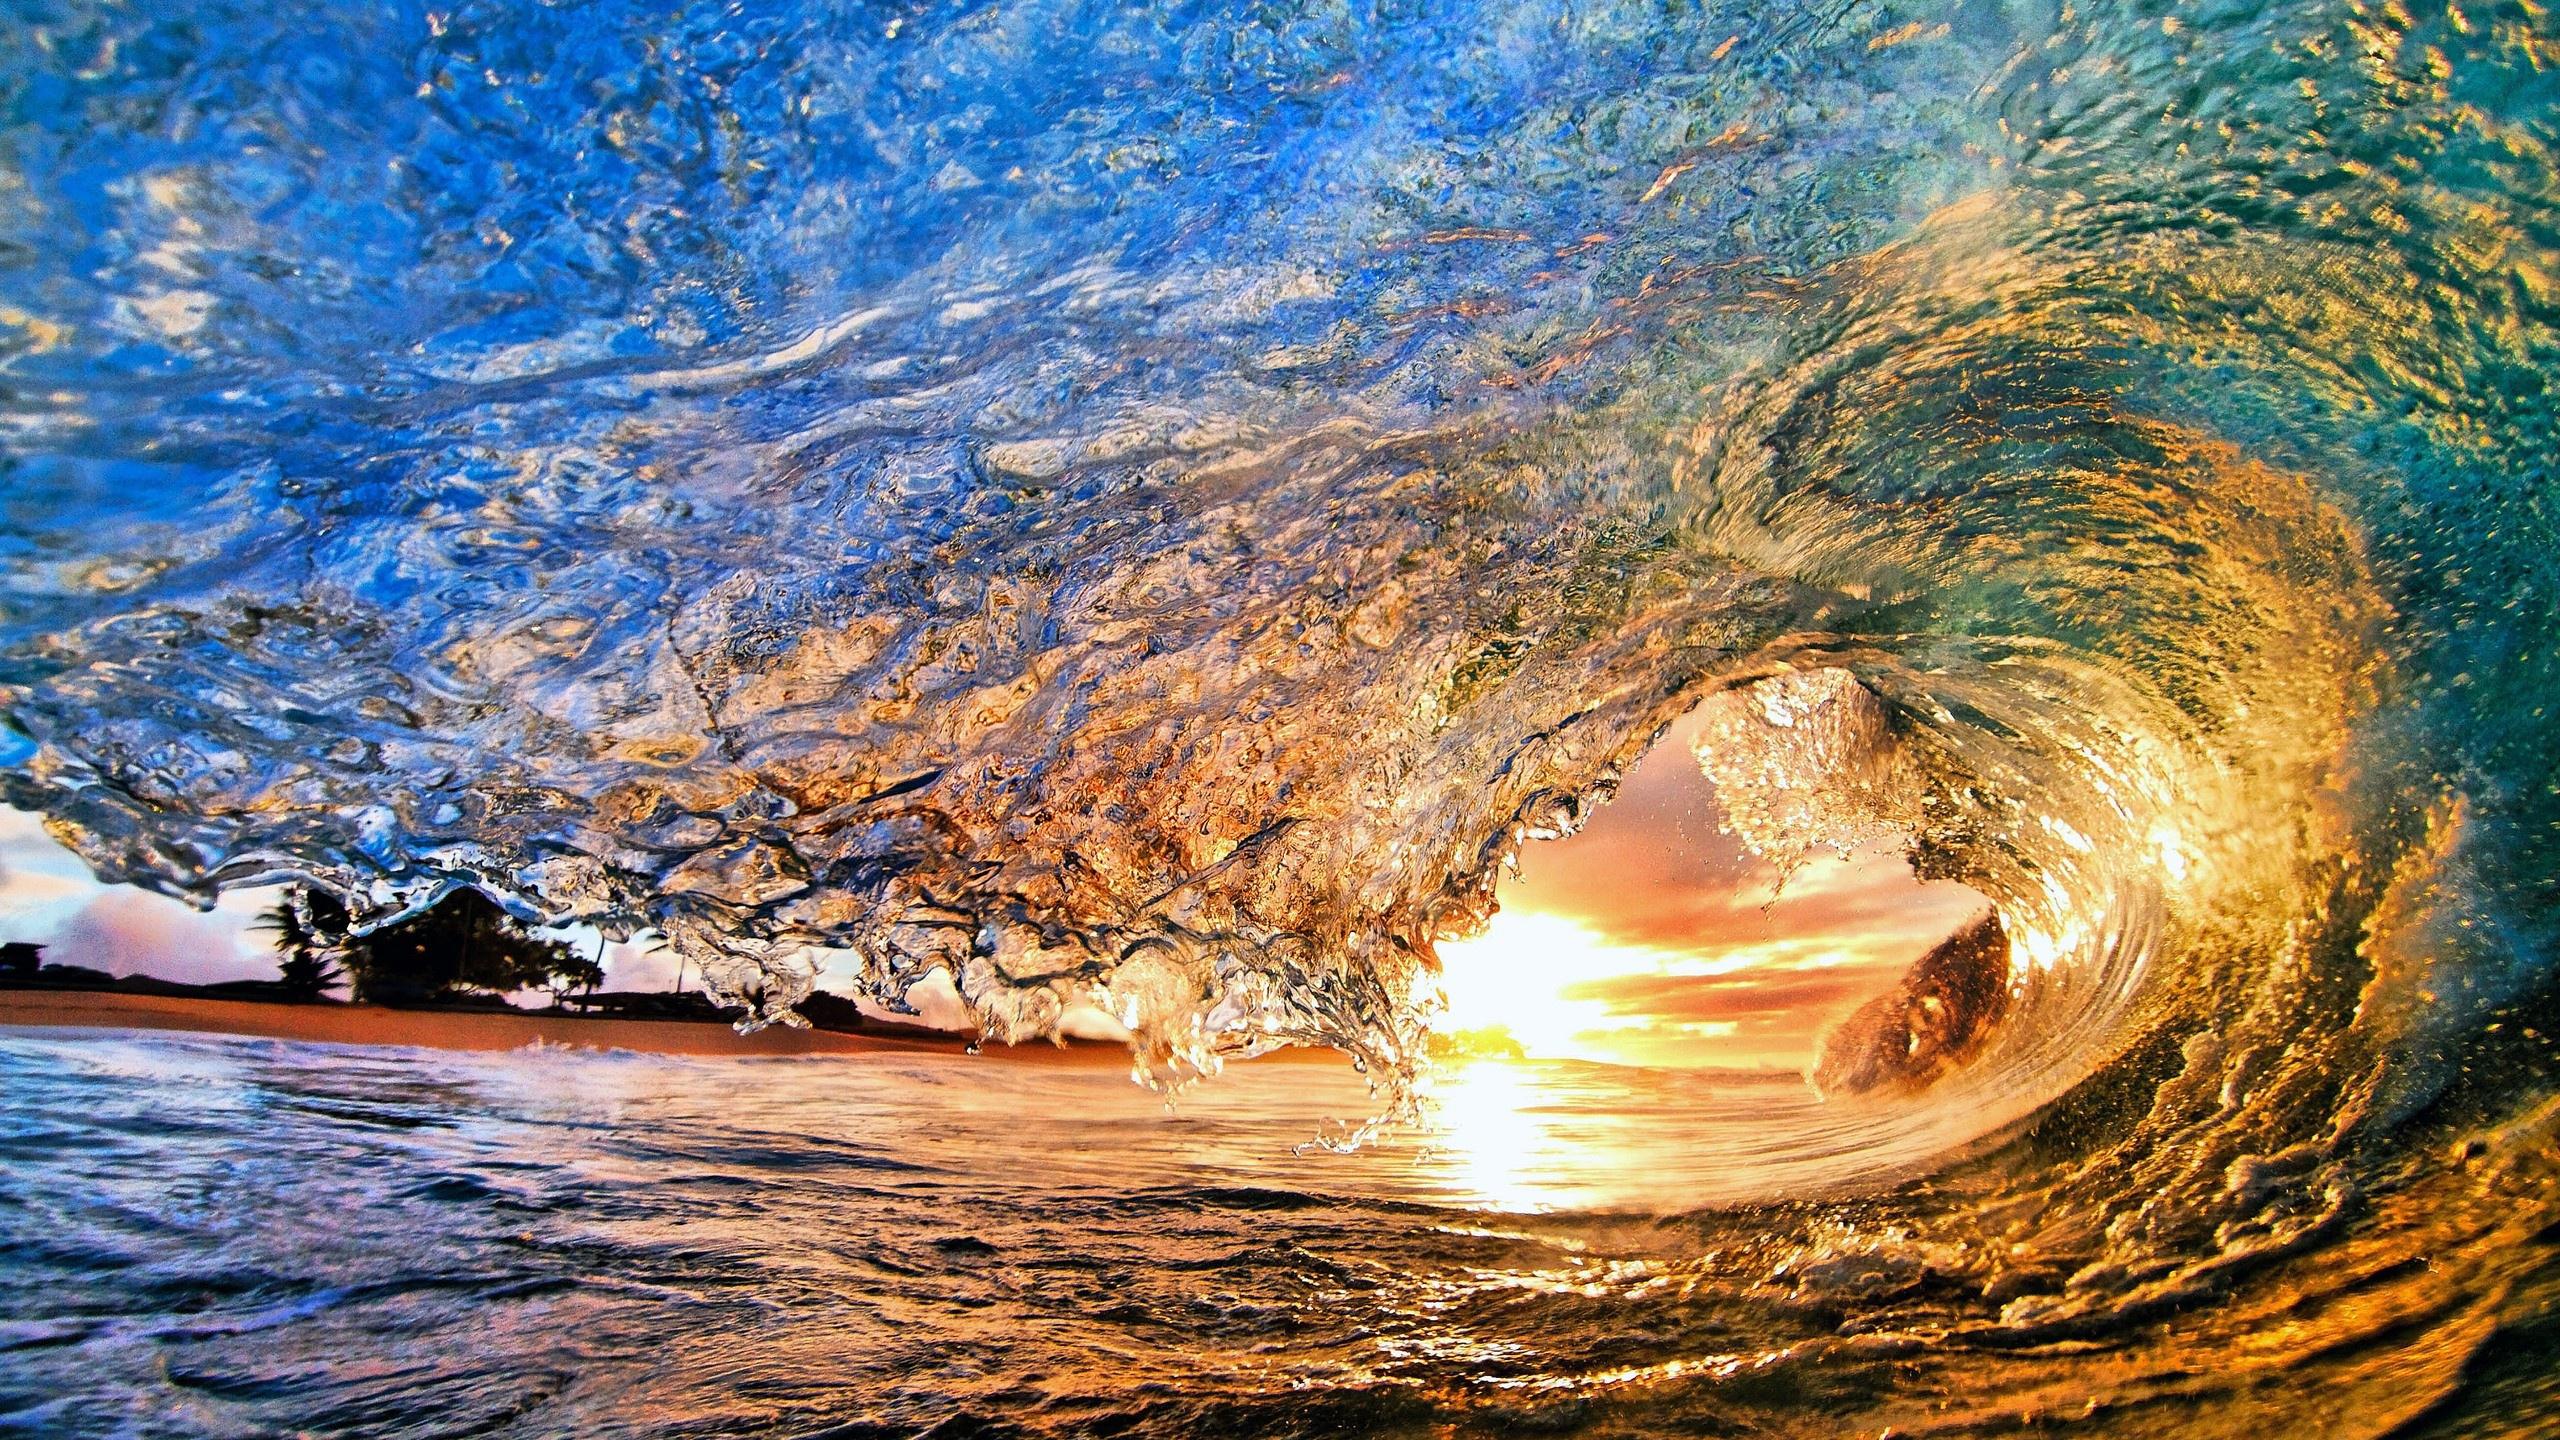 hawaii beach waves wallpaper